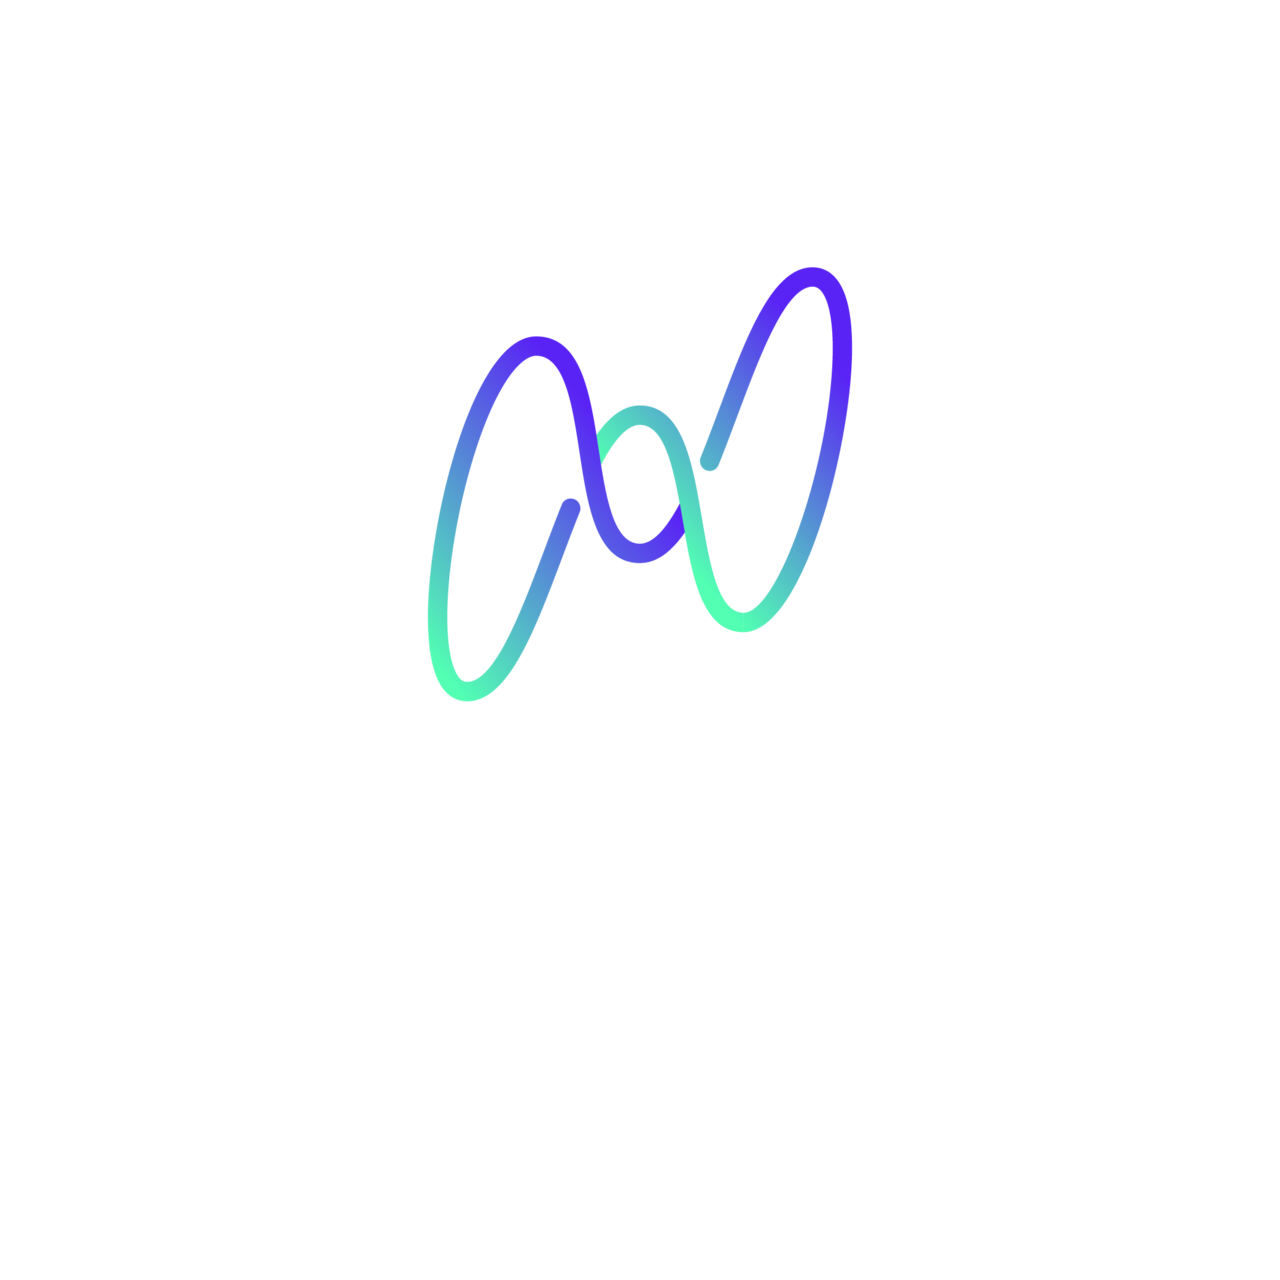 Medium Energy by Evan Helda